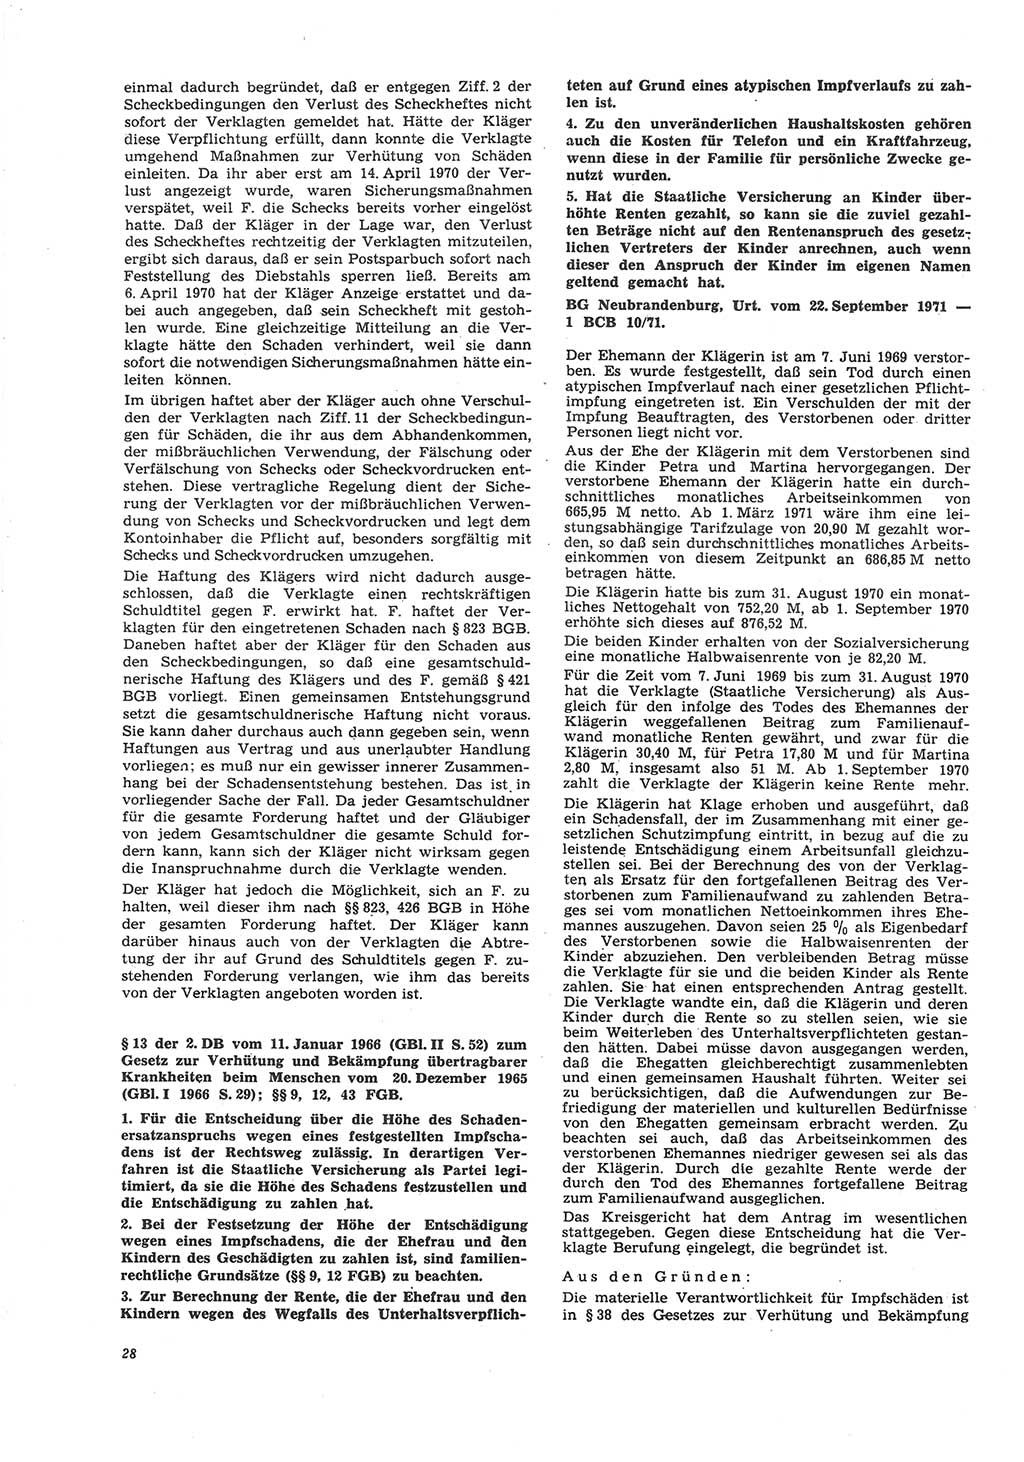 Neue Justiz (NJ), Zeitschrift für Recht und Rechtswissenschaft [Deutsche Demokratische Republik (DDR)], 26. Jahrgang 1972, Seite 28 (NJ DDR 1972, S. 28)